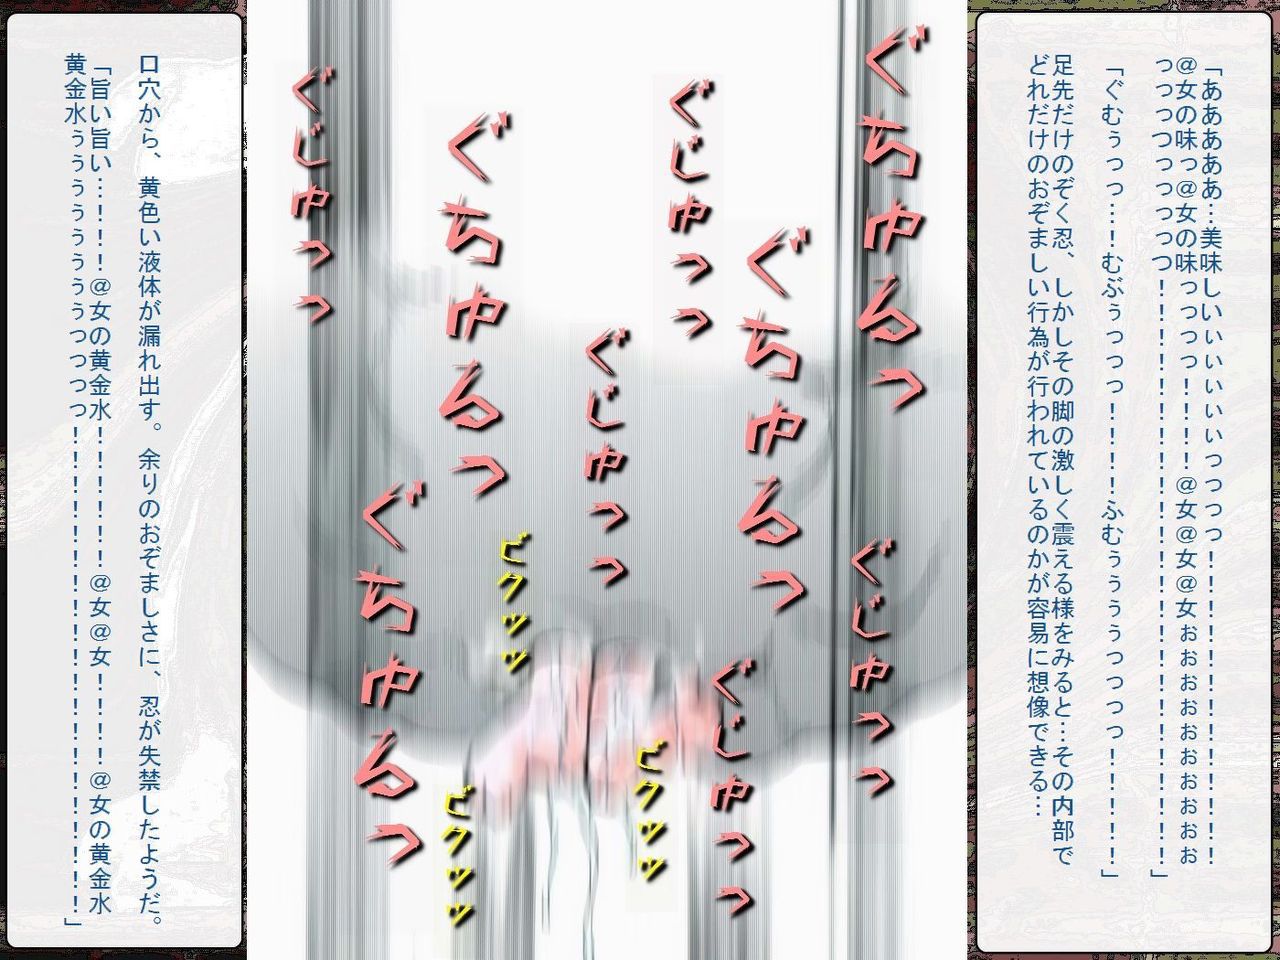 [Teito Bouei Ryodan] RTK Book Ver. 8.4: “‘Tsuki’ Monogatari Saishuu-banashi ‘Tsubasa, soshite... Mayoi maimai’” (<Monogatari> Series) [帝都防衛旅団] RTKBOOK Ver.8.4 「『憑き』物語 最終話 『ひ〇ぎ倶楽部』」 (〈物語〉シリーズ) 233